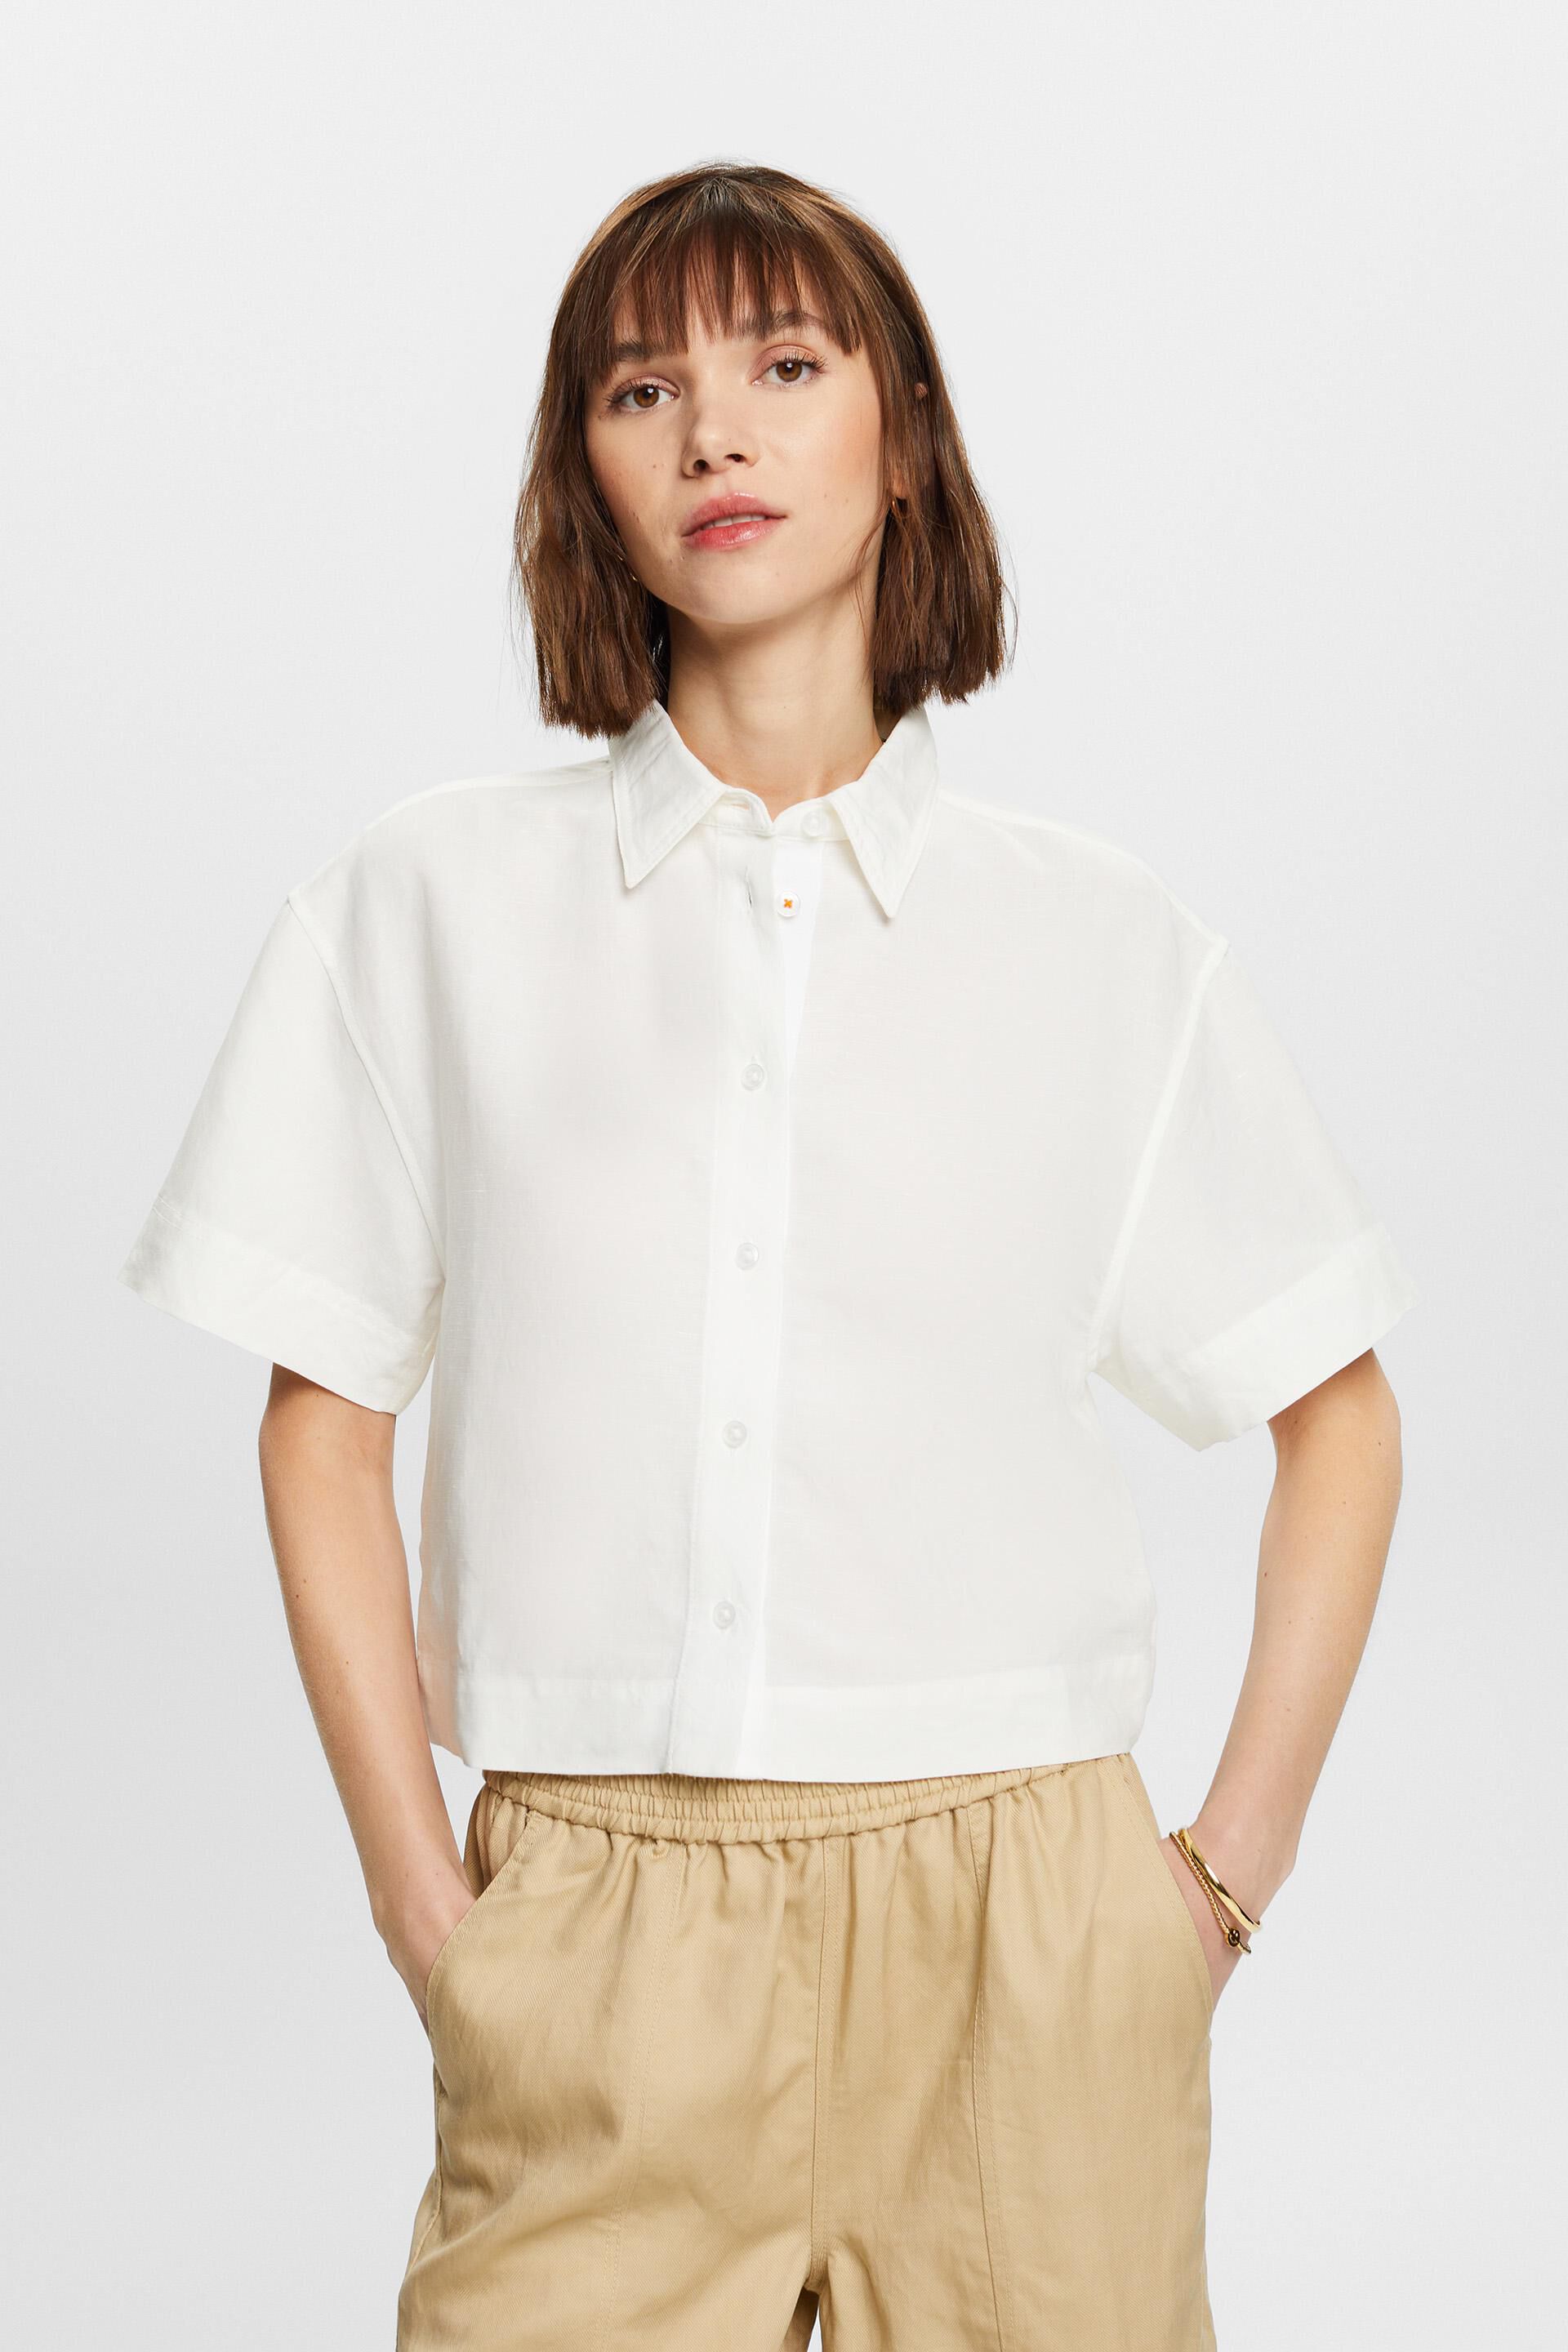 Esprit Damen Cropped shirt blouse, linen blend